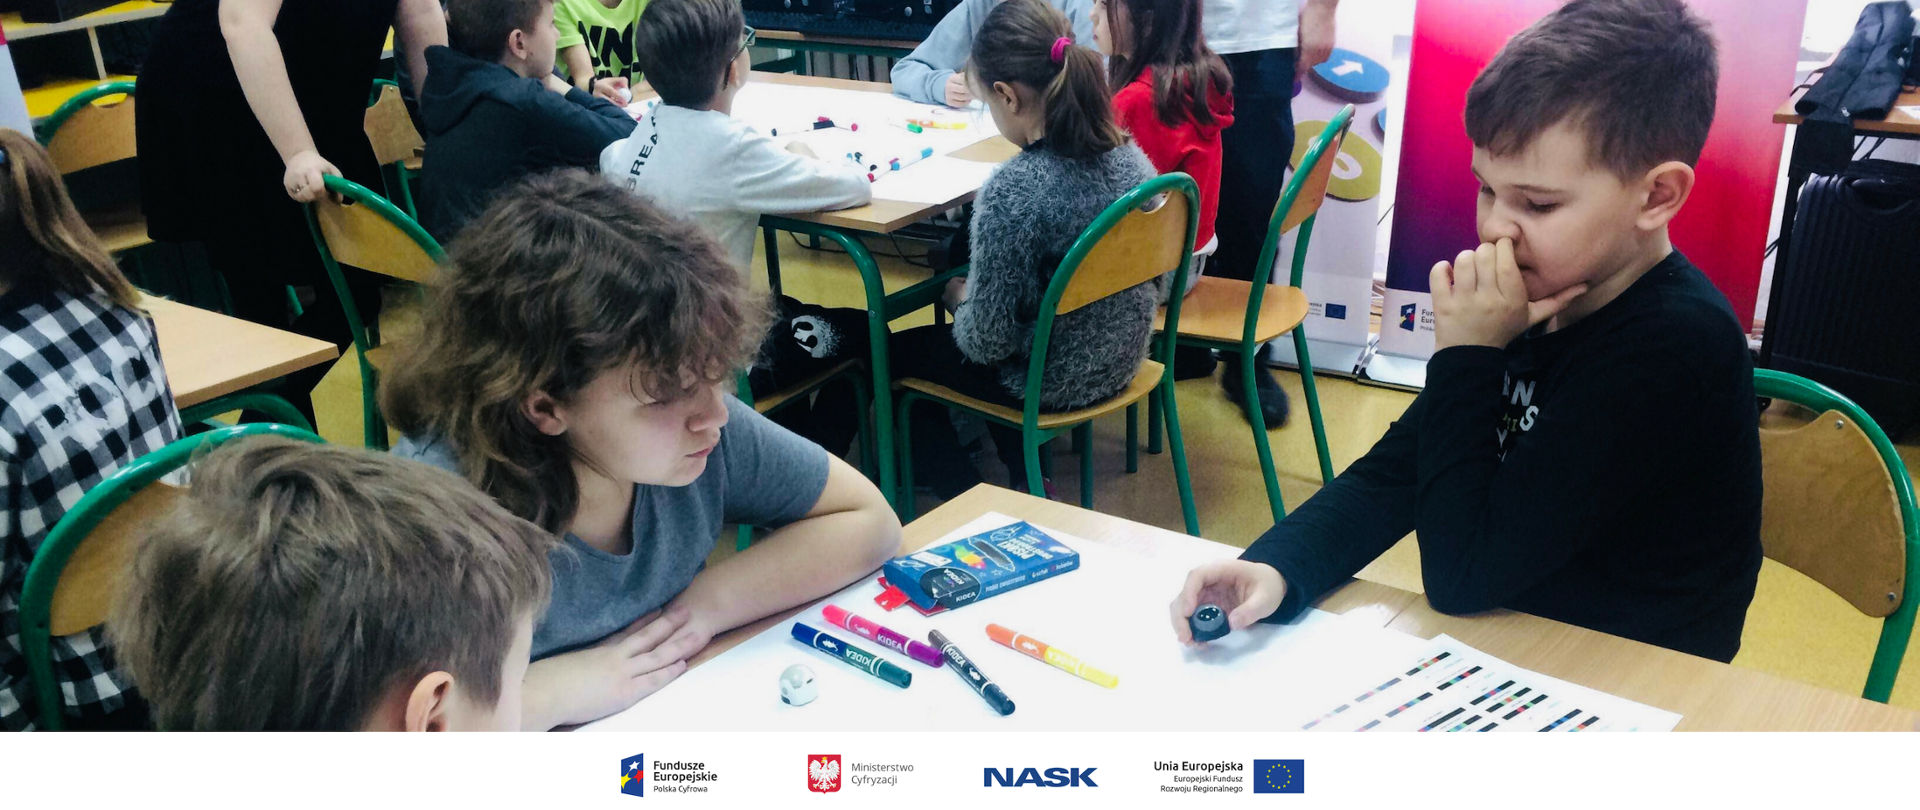 Na zdjęciu widać trzech chłopców przy szkolnej ławce. Na ławce rozłożone są kartki i flamastry. Na dole zdjęcia umieszczone są logotypy: Fundusze Europejskie. Polska Cyfrowa, Ministerstwo Cyfryzacji, NASK oraz Unia Europejska. Europejski Fundusz Rozwoju Regionalnego. 